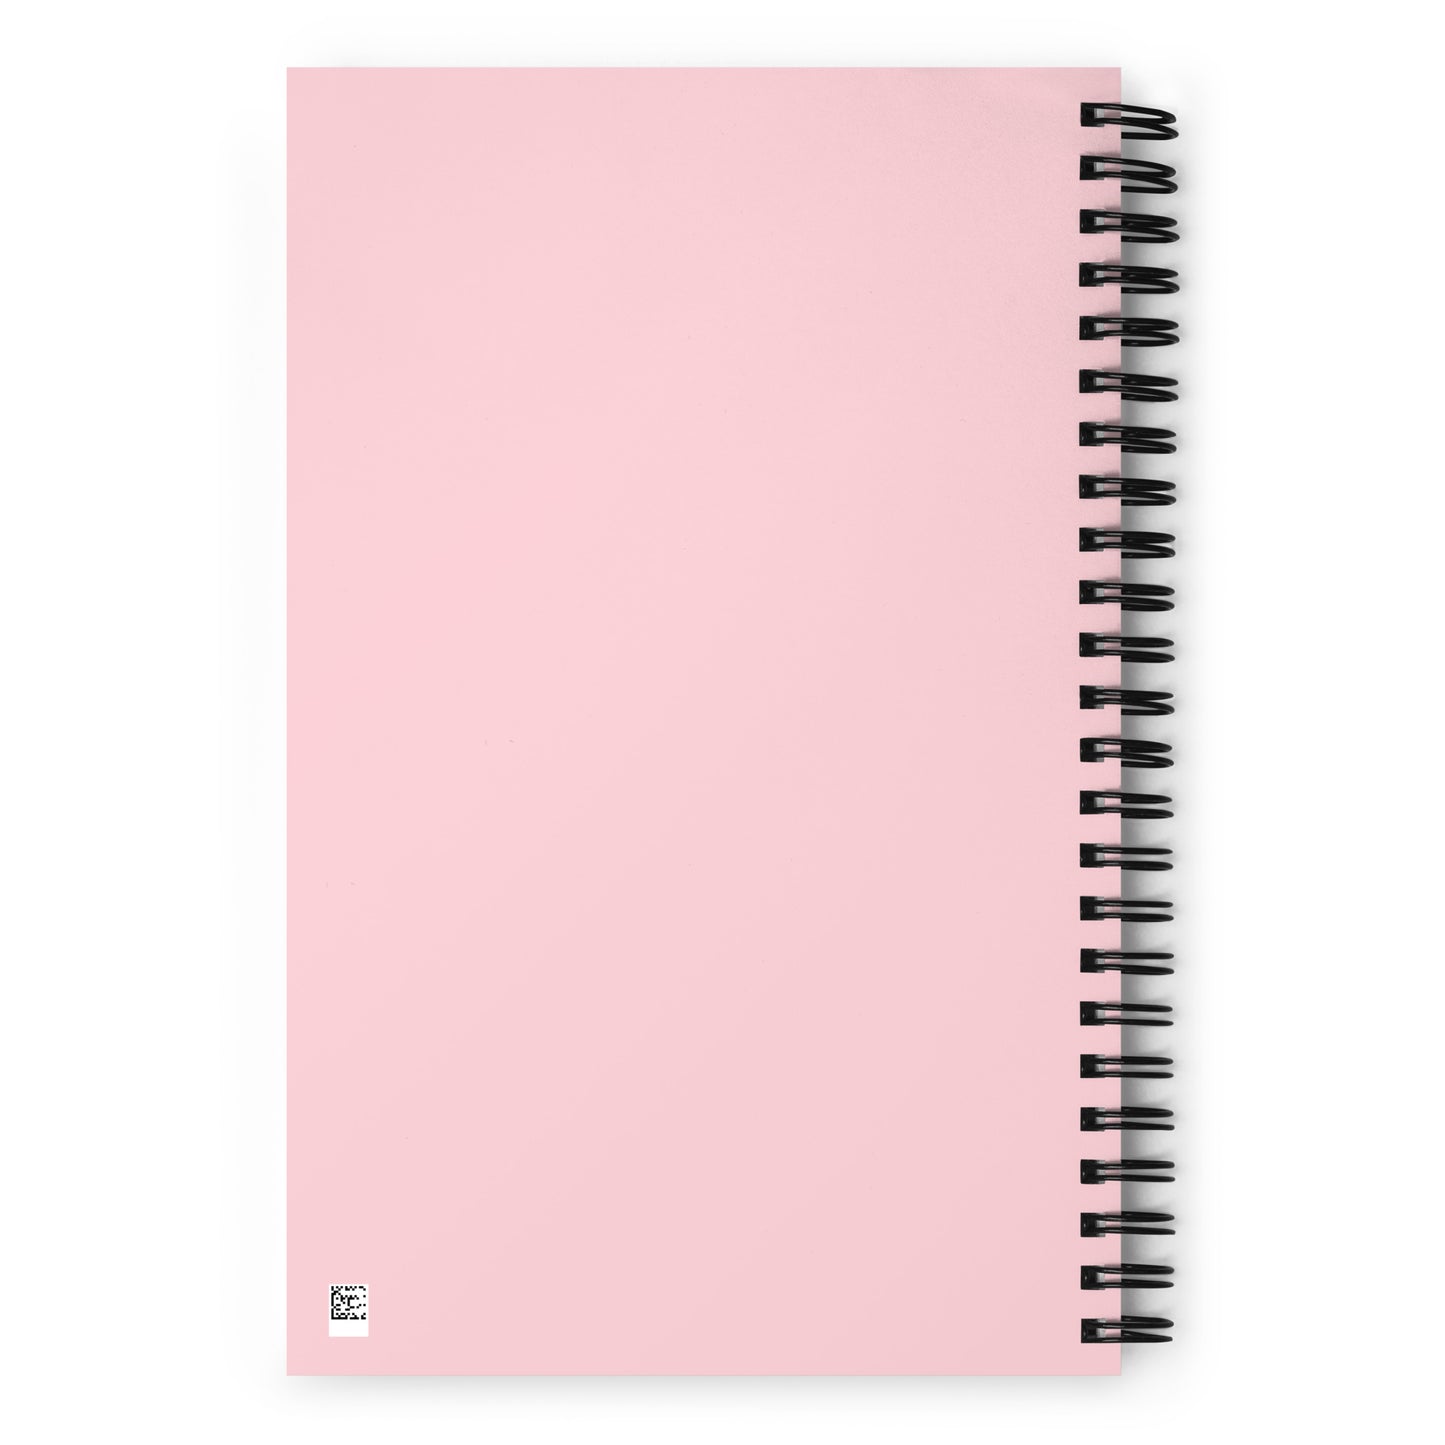 CP Spiral notebook